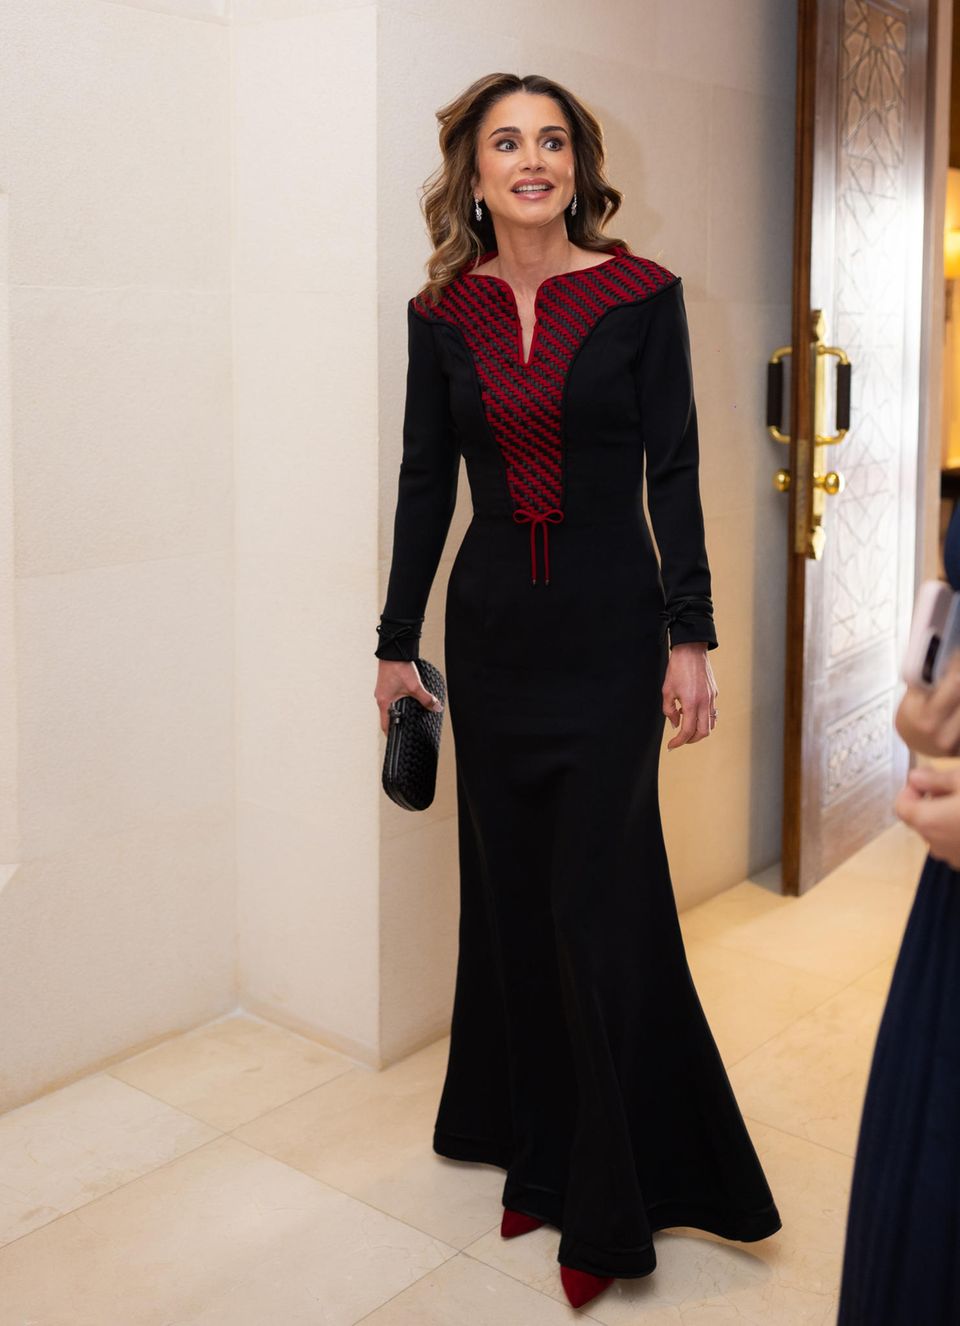 Elegant in Rot und Schwarz: Königin Rania legt bei ihrer Ehrung des Ordens der Renaissance im Al Husseiniya Palast einen glamourösen Auftritt hin. Für diesen Anlass trägt die Königin ein langes schwarzes Kleid mit geometrischer roter Strickerei am Ausschnitt und eine passende schwarze Bottega Veneta Clutch. 